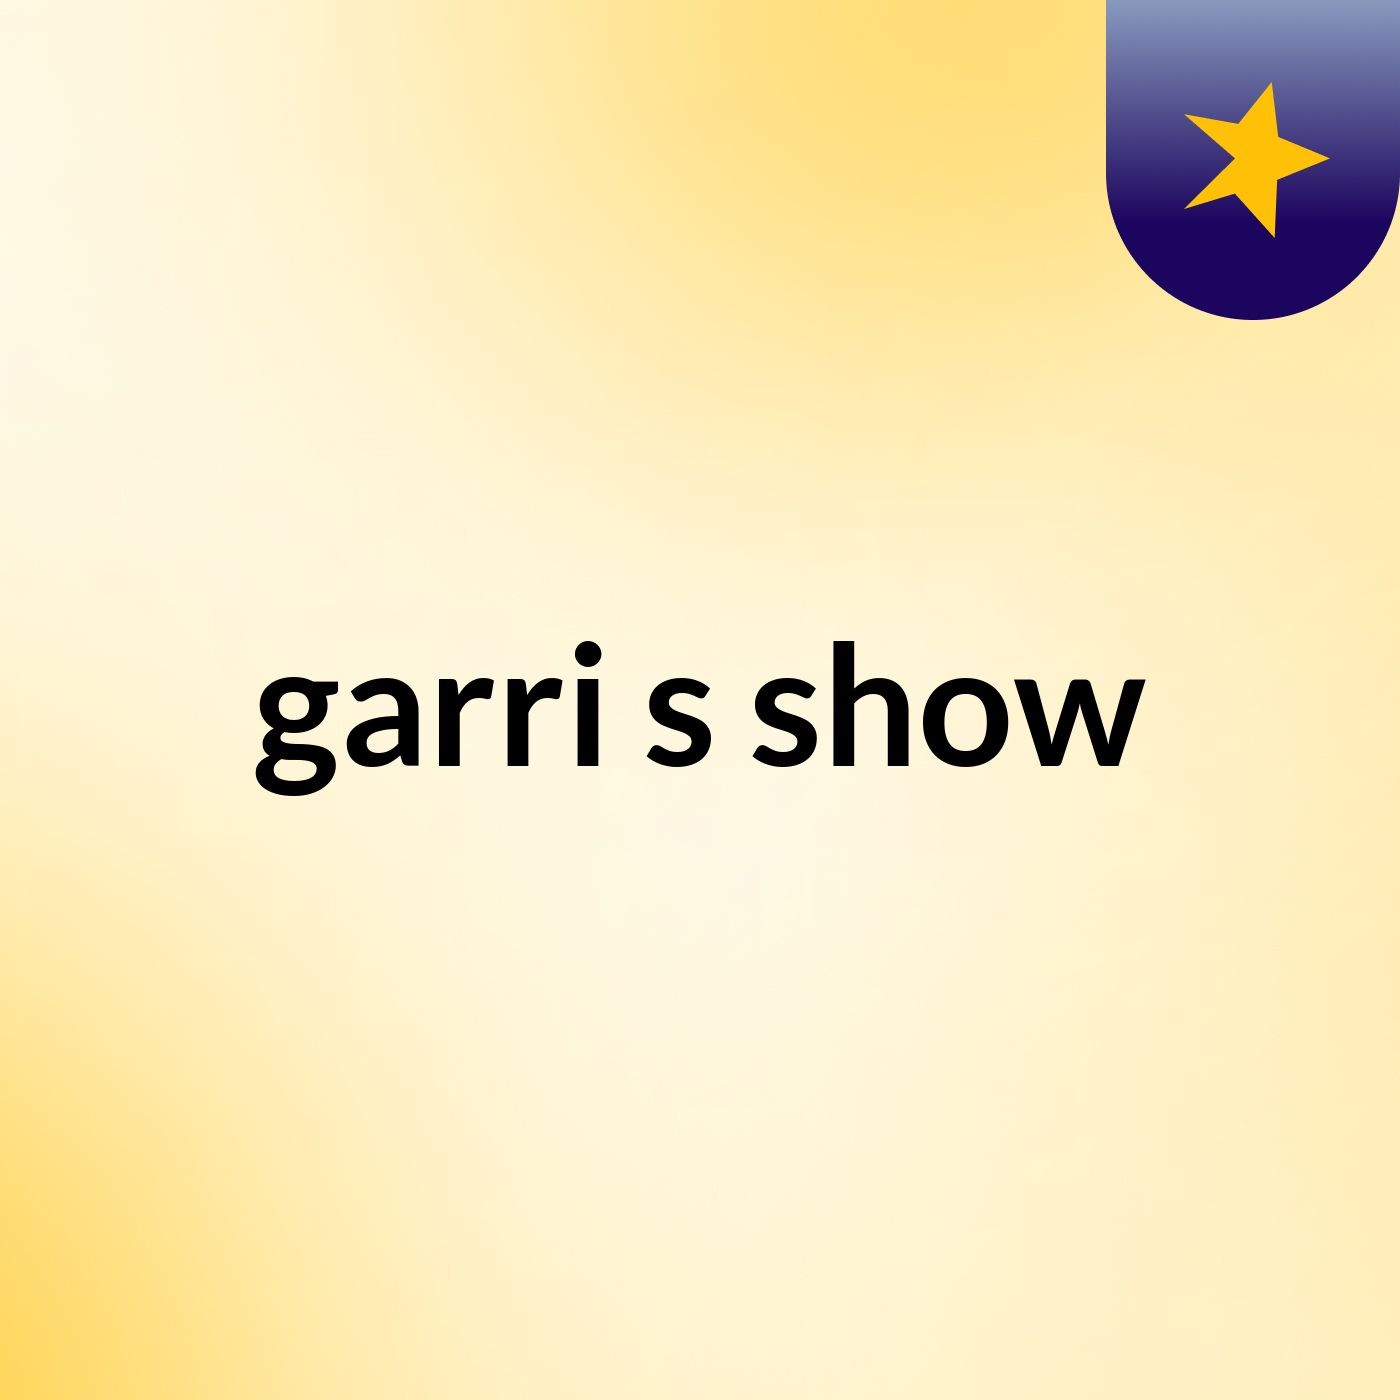 garri's show